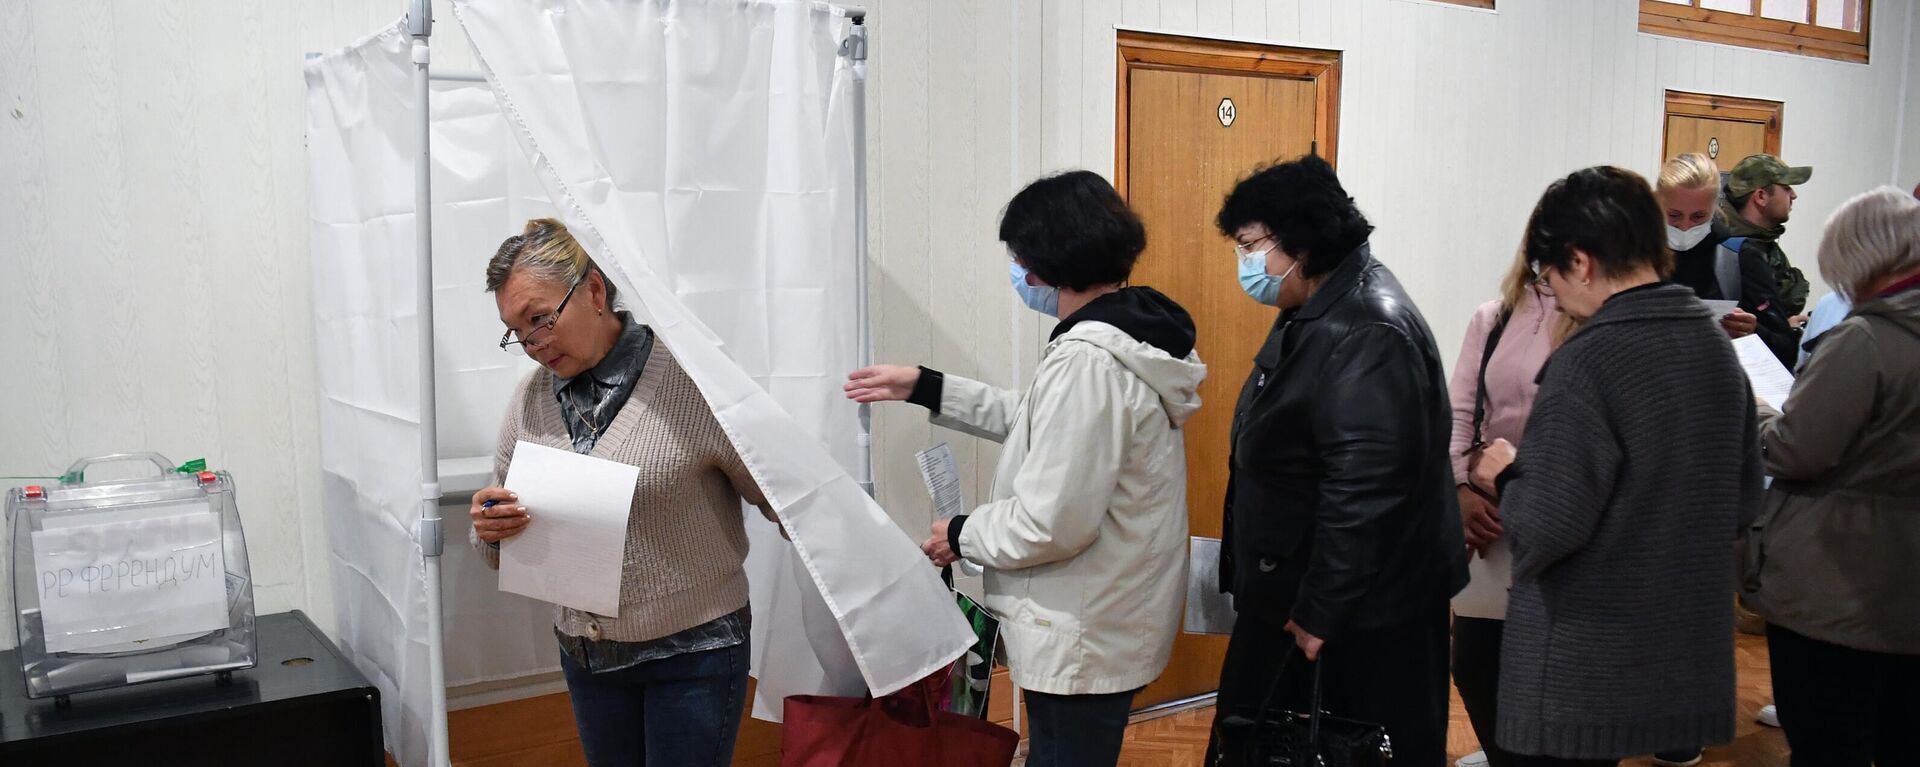 يصوت الناس في استفتاء على انضمام مقاطعة زابوروجيه إلى روسيا في مركز اقتراع في مؤسسة ميليتوبول، 23 سبتمبر 2022 - سبوتنيك عربي, 1920, 28.09.2022